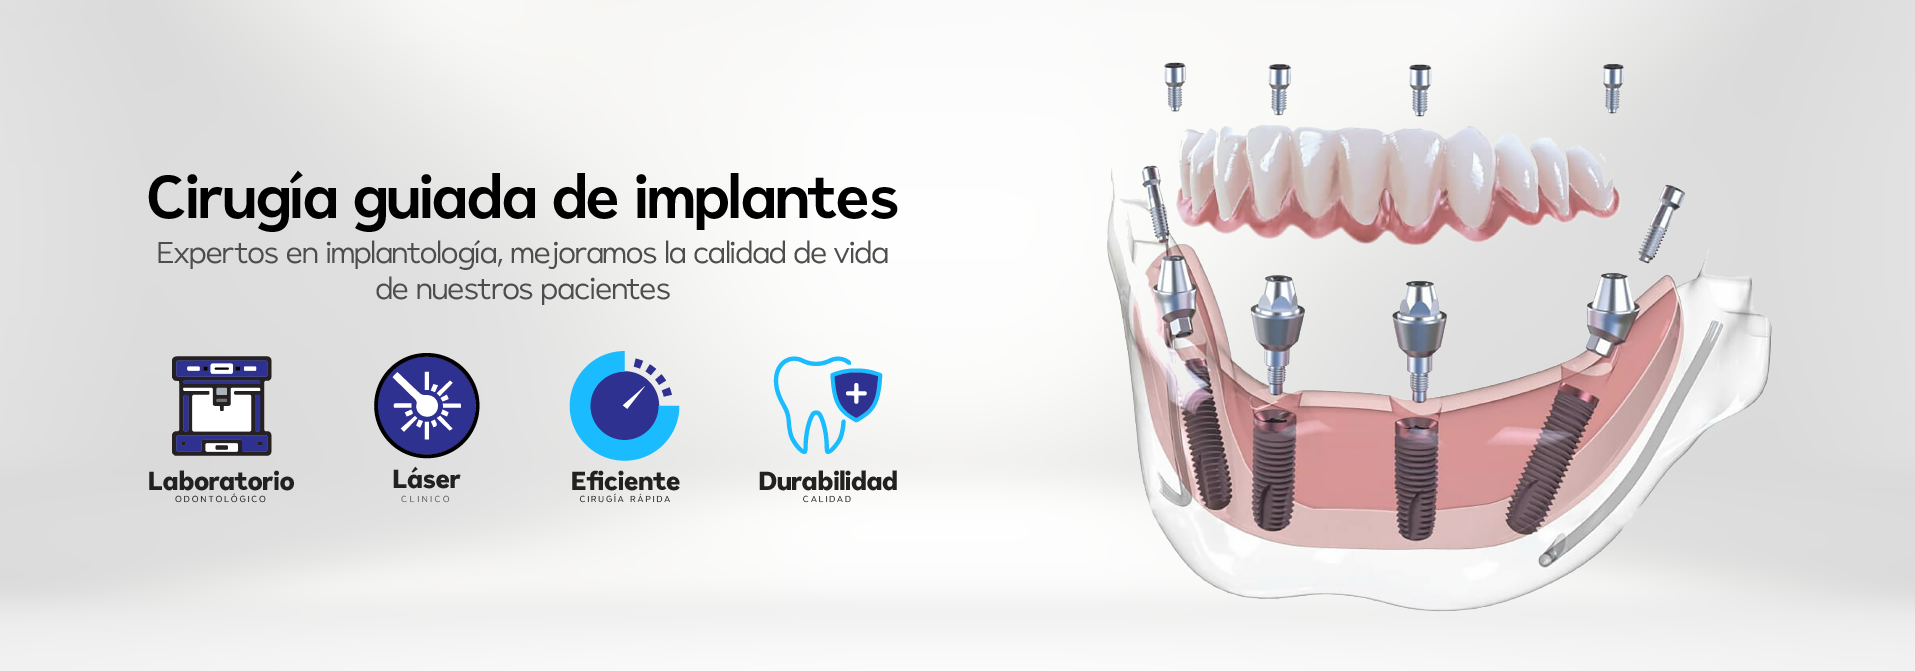 cirugía guiada implantes tello odontología cochabamba bolivia